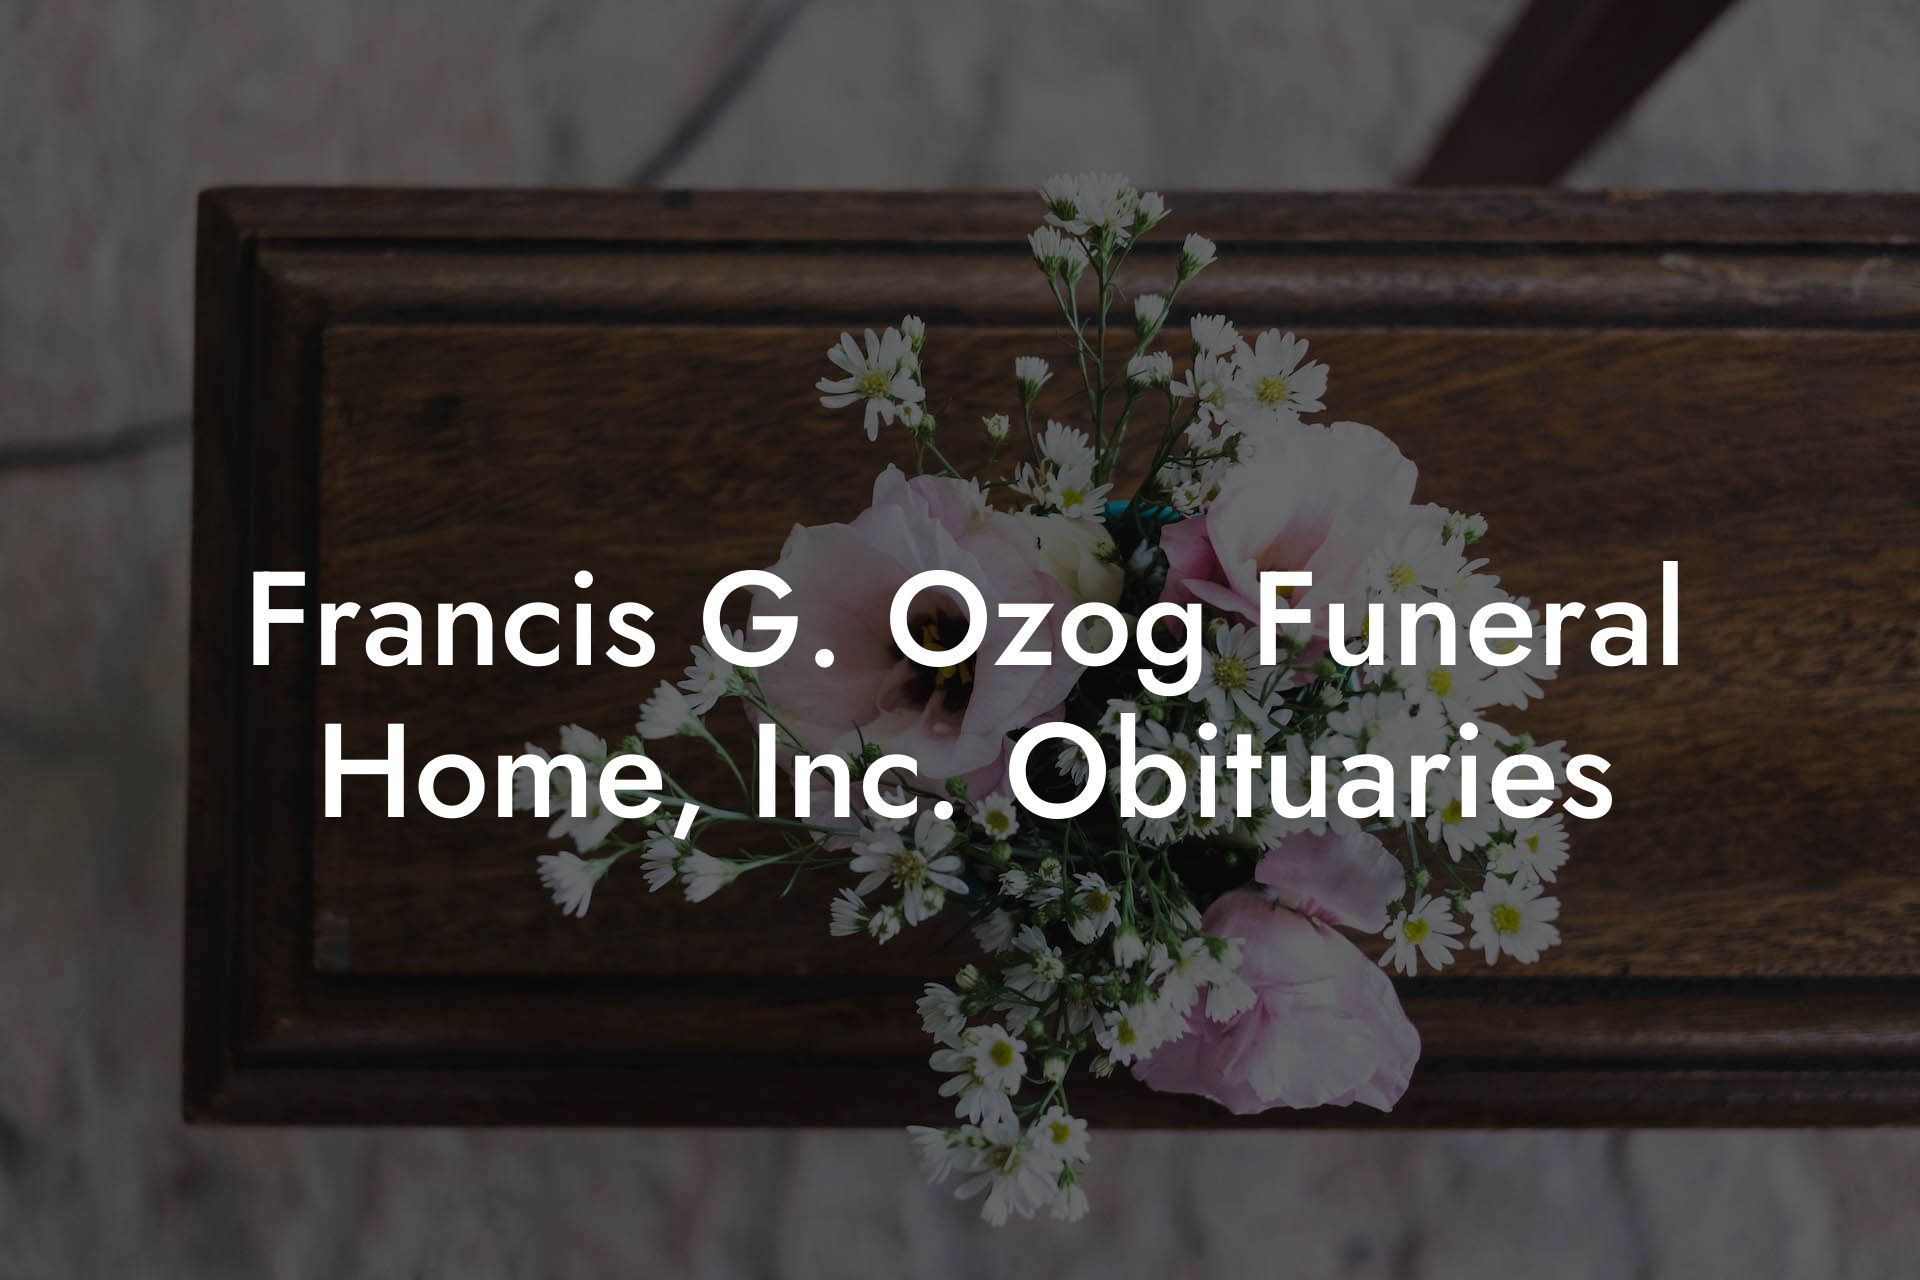 Francis G. Ozog Funeral Home, Inc. Obituaries